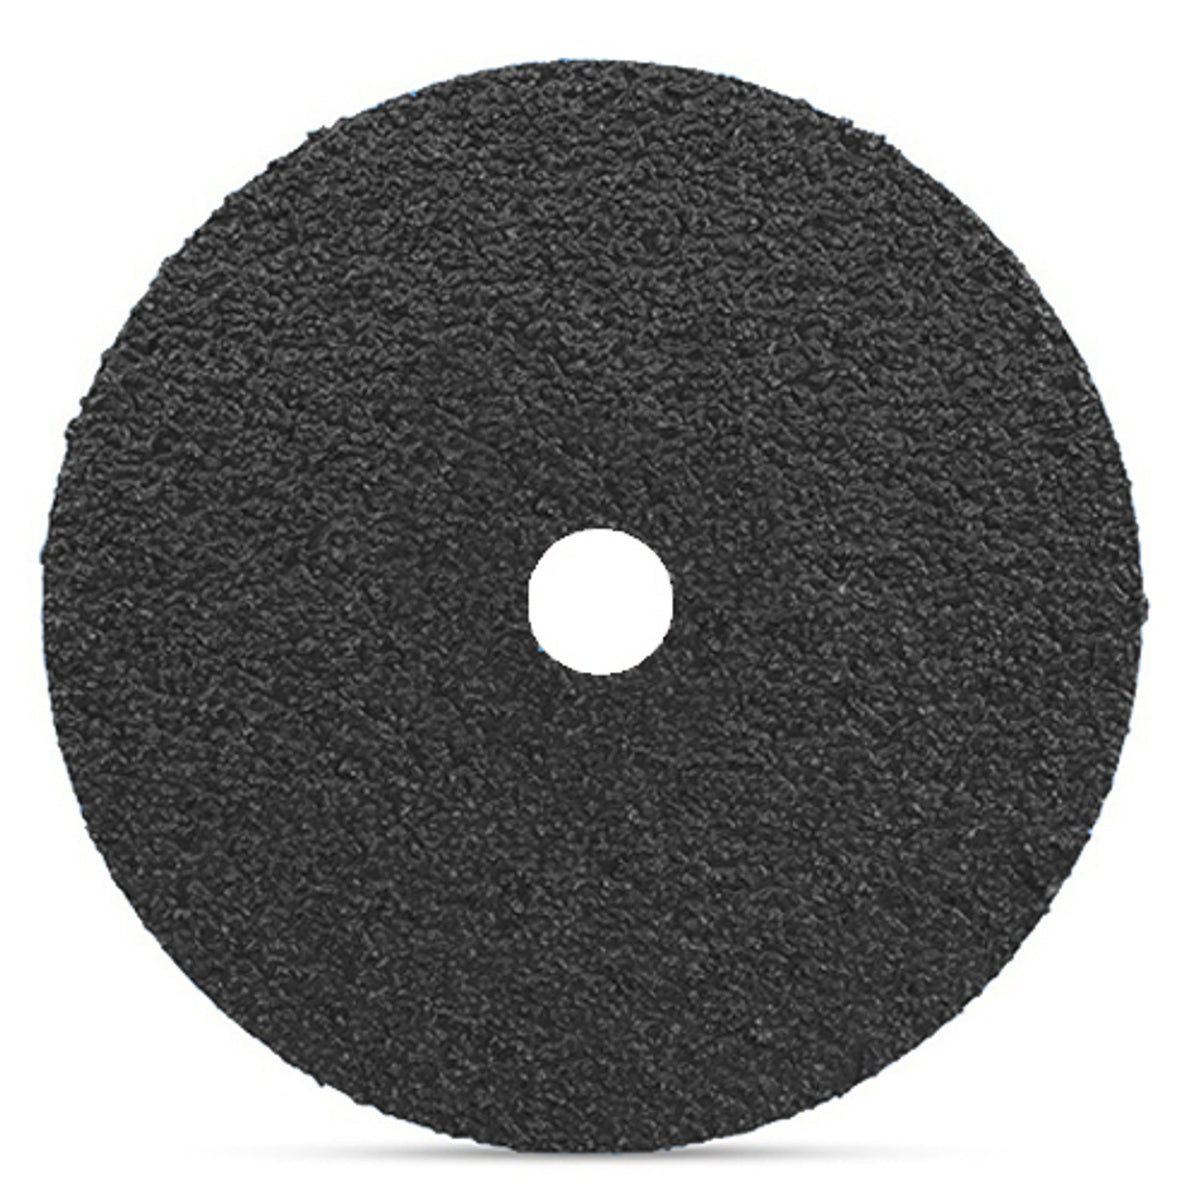 7" x 7/8" Silicon Carbide Resin Fiber Sanding Discs